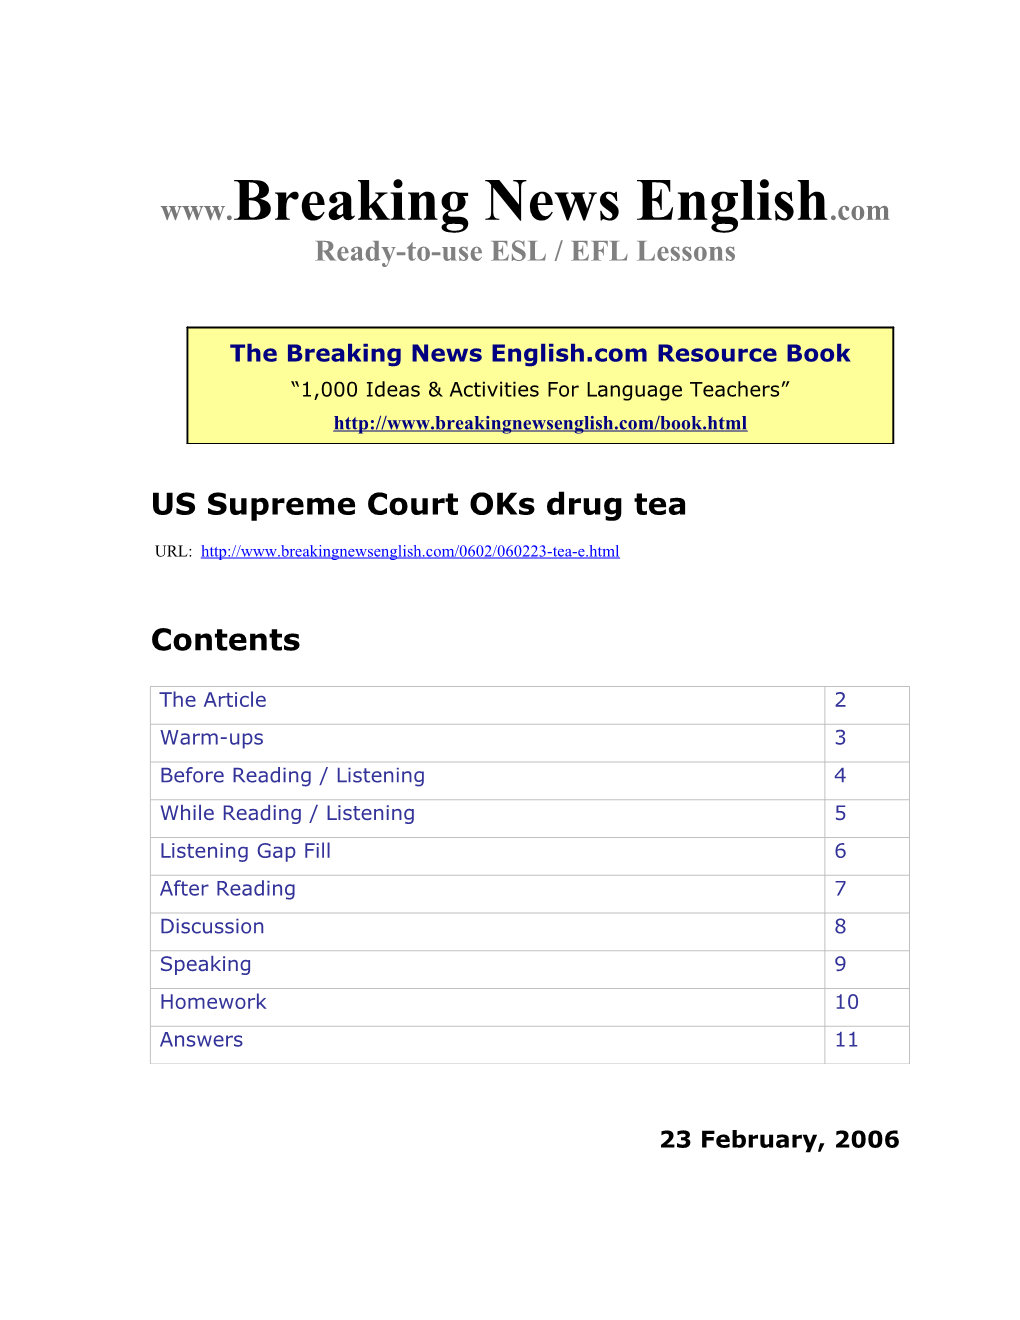 US Supreme Court Oks Drug Tea